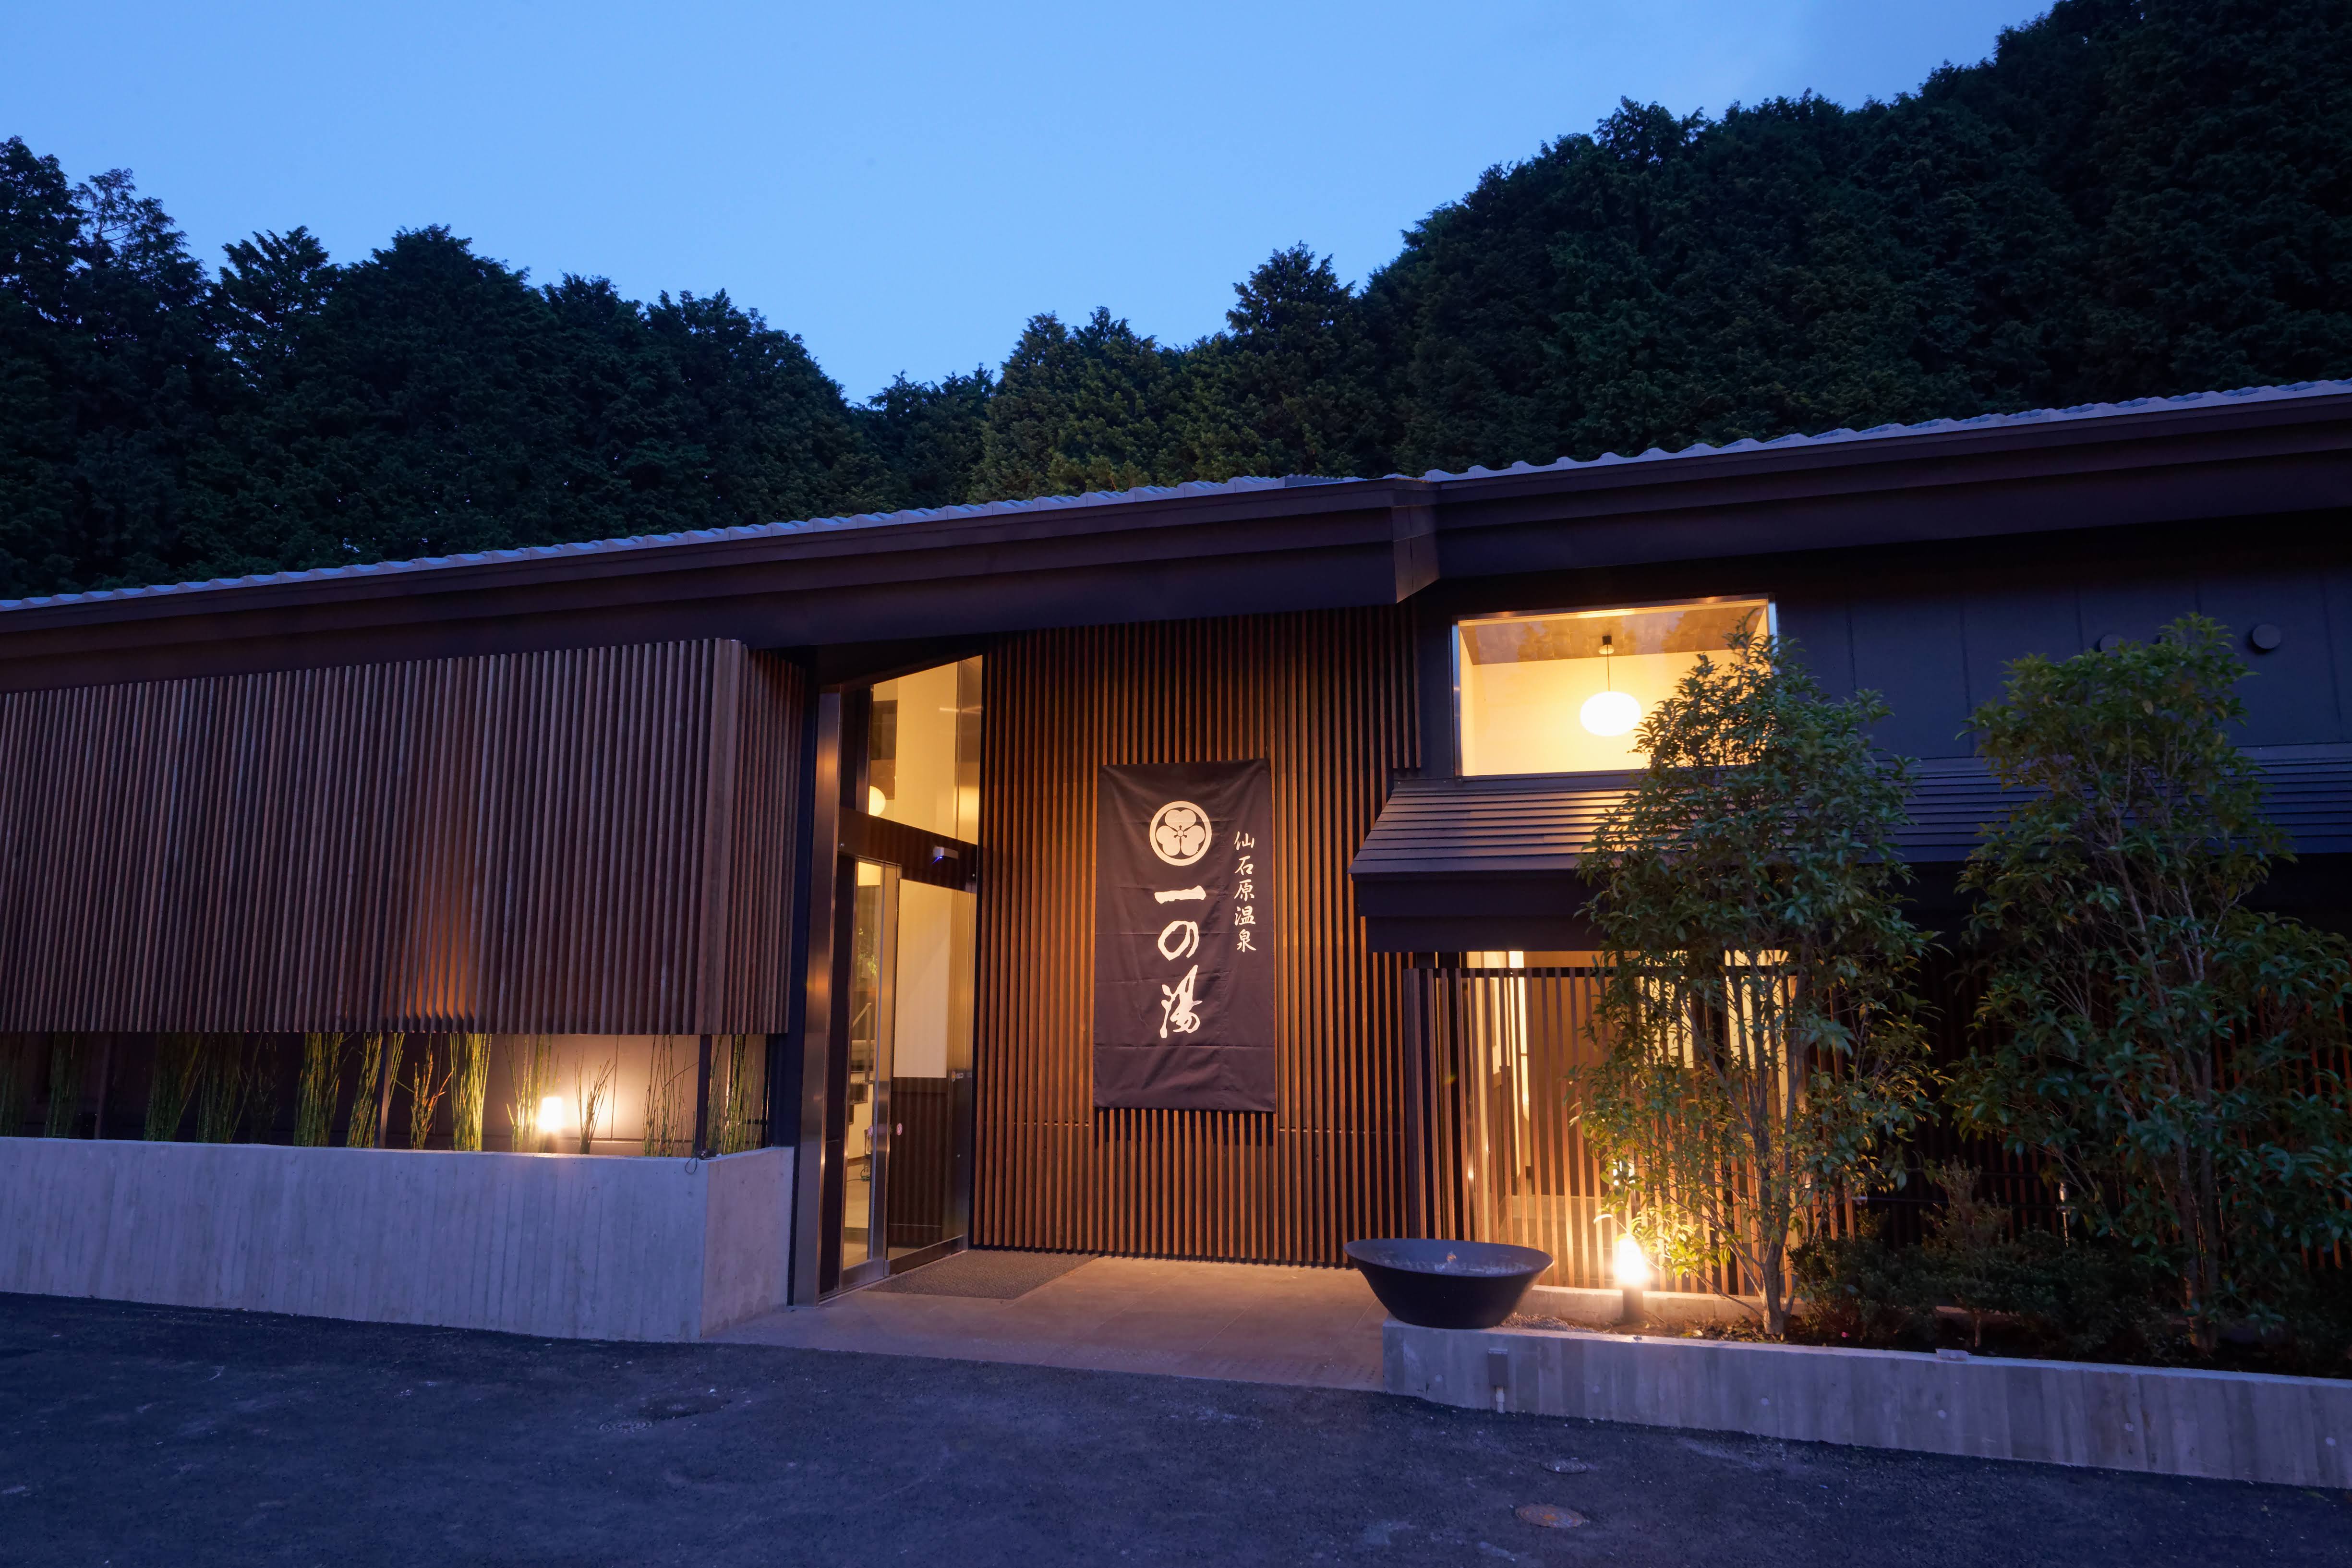 【関東】3万円以下で宿泊できるおすすめ露天風呂付き旅館